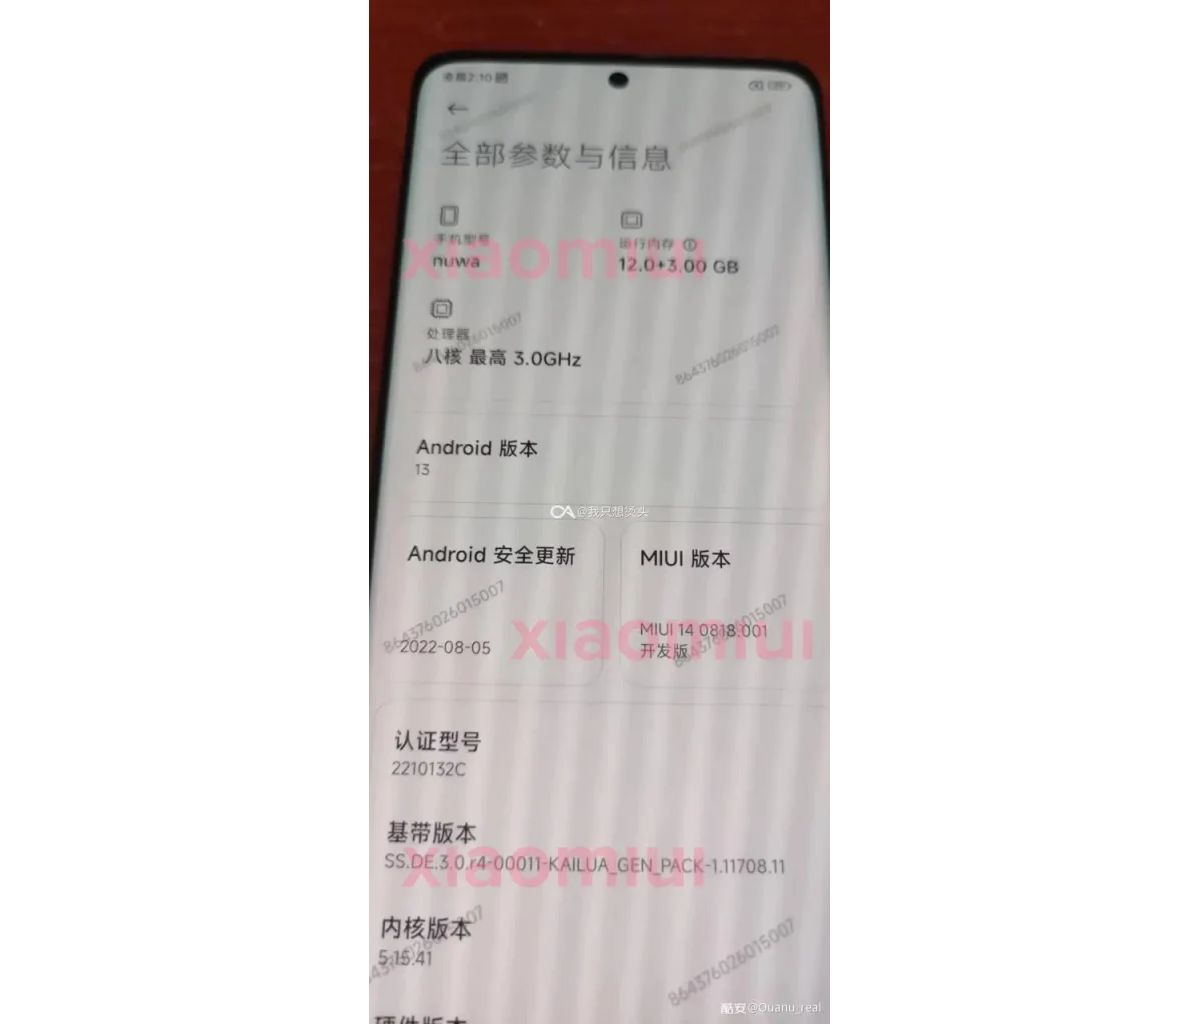 MIUI 14 beta version of Xiaomi